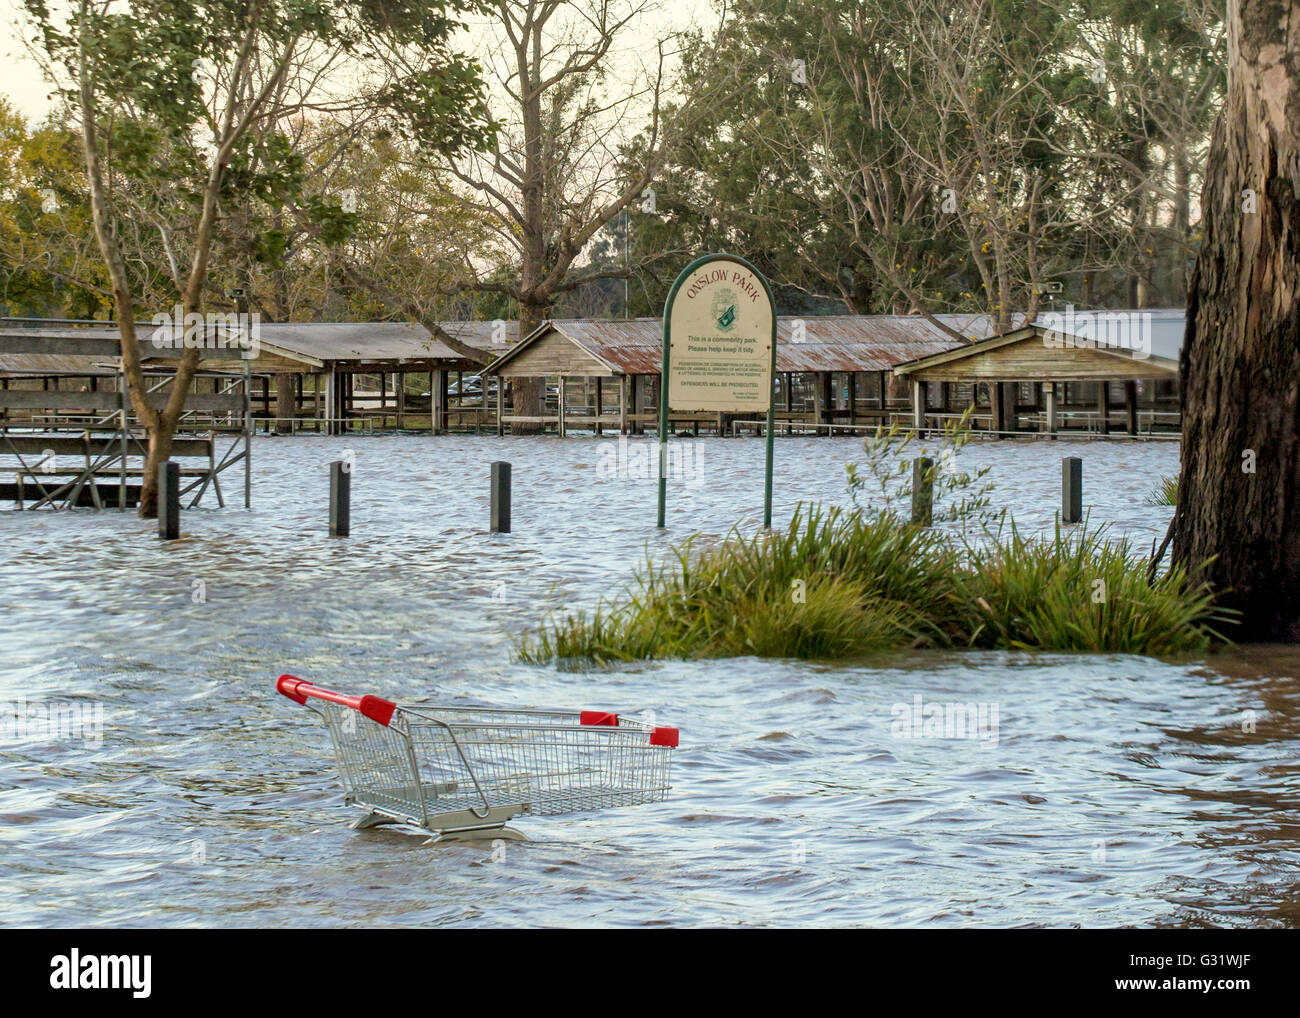 Camden, New-South.Wales, Australien. 6. Juni 2016. Onslow-Park in der Nähe von Camden NSW überschwemmt, nach heftigen Credit Regenfällen: Stonemeadow Fotografie/Alamy Live News Stockfoto